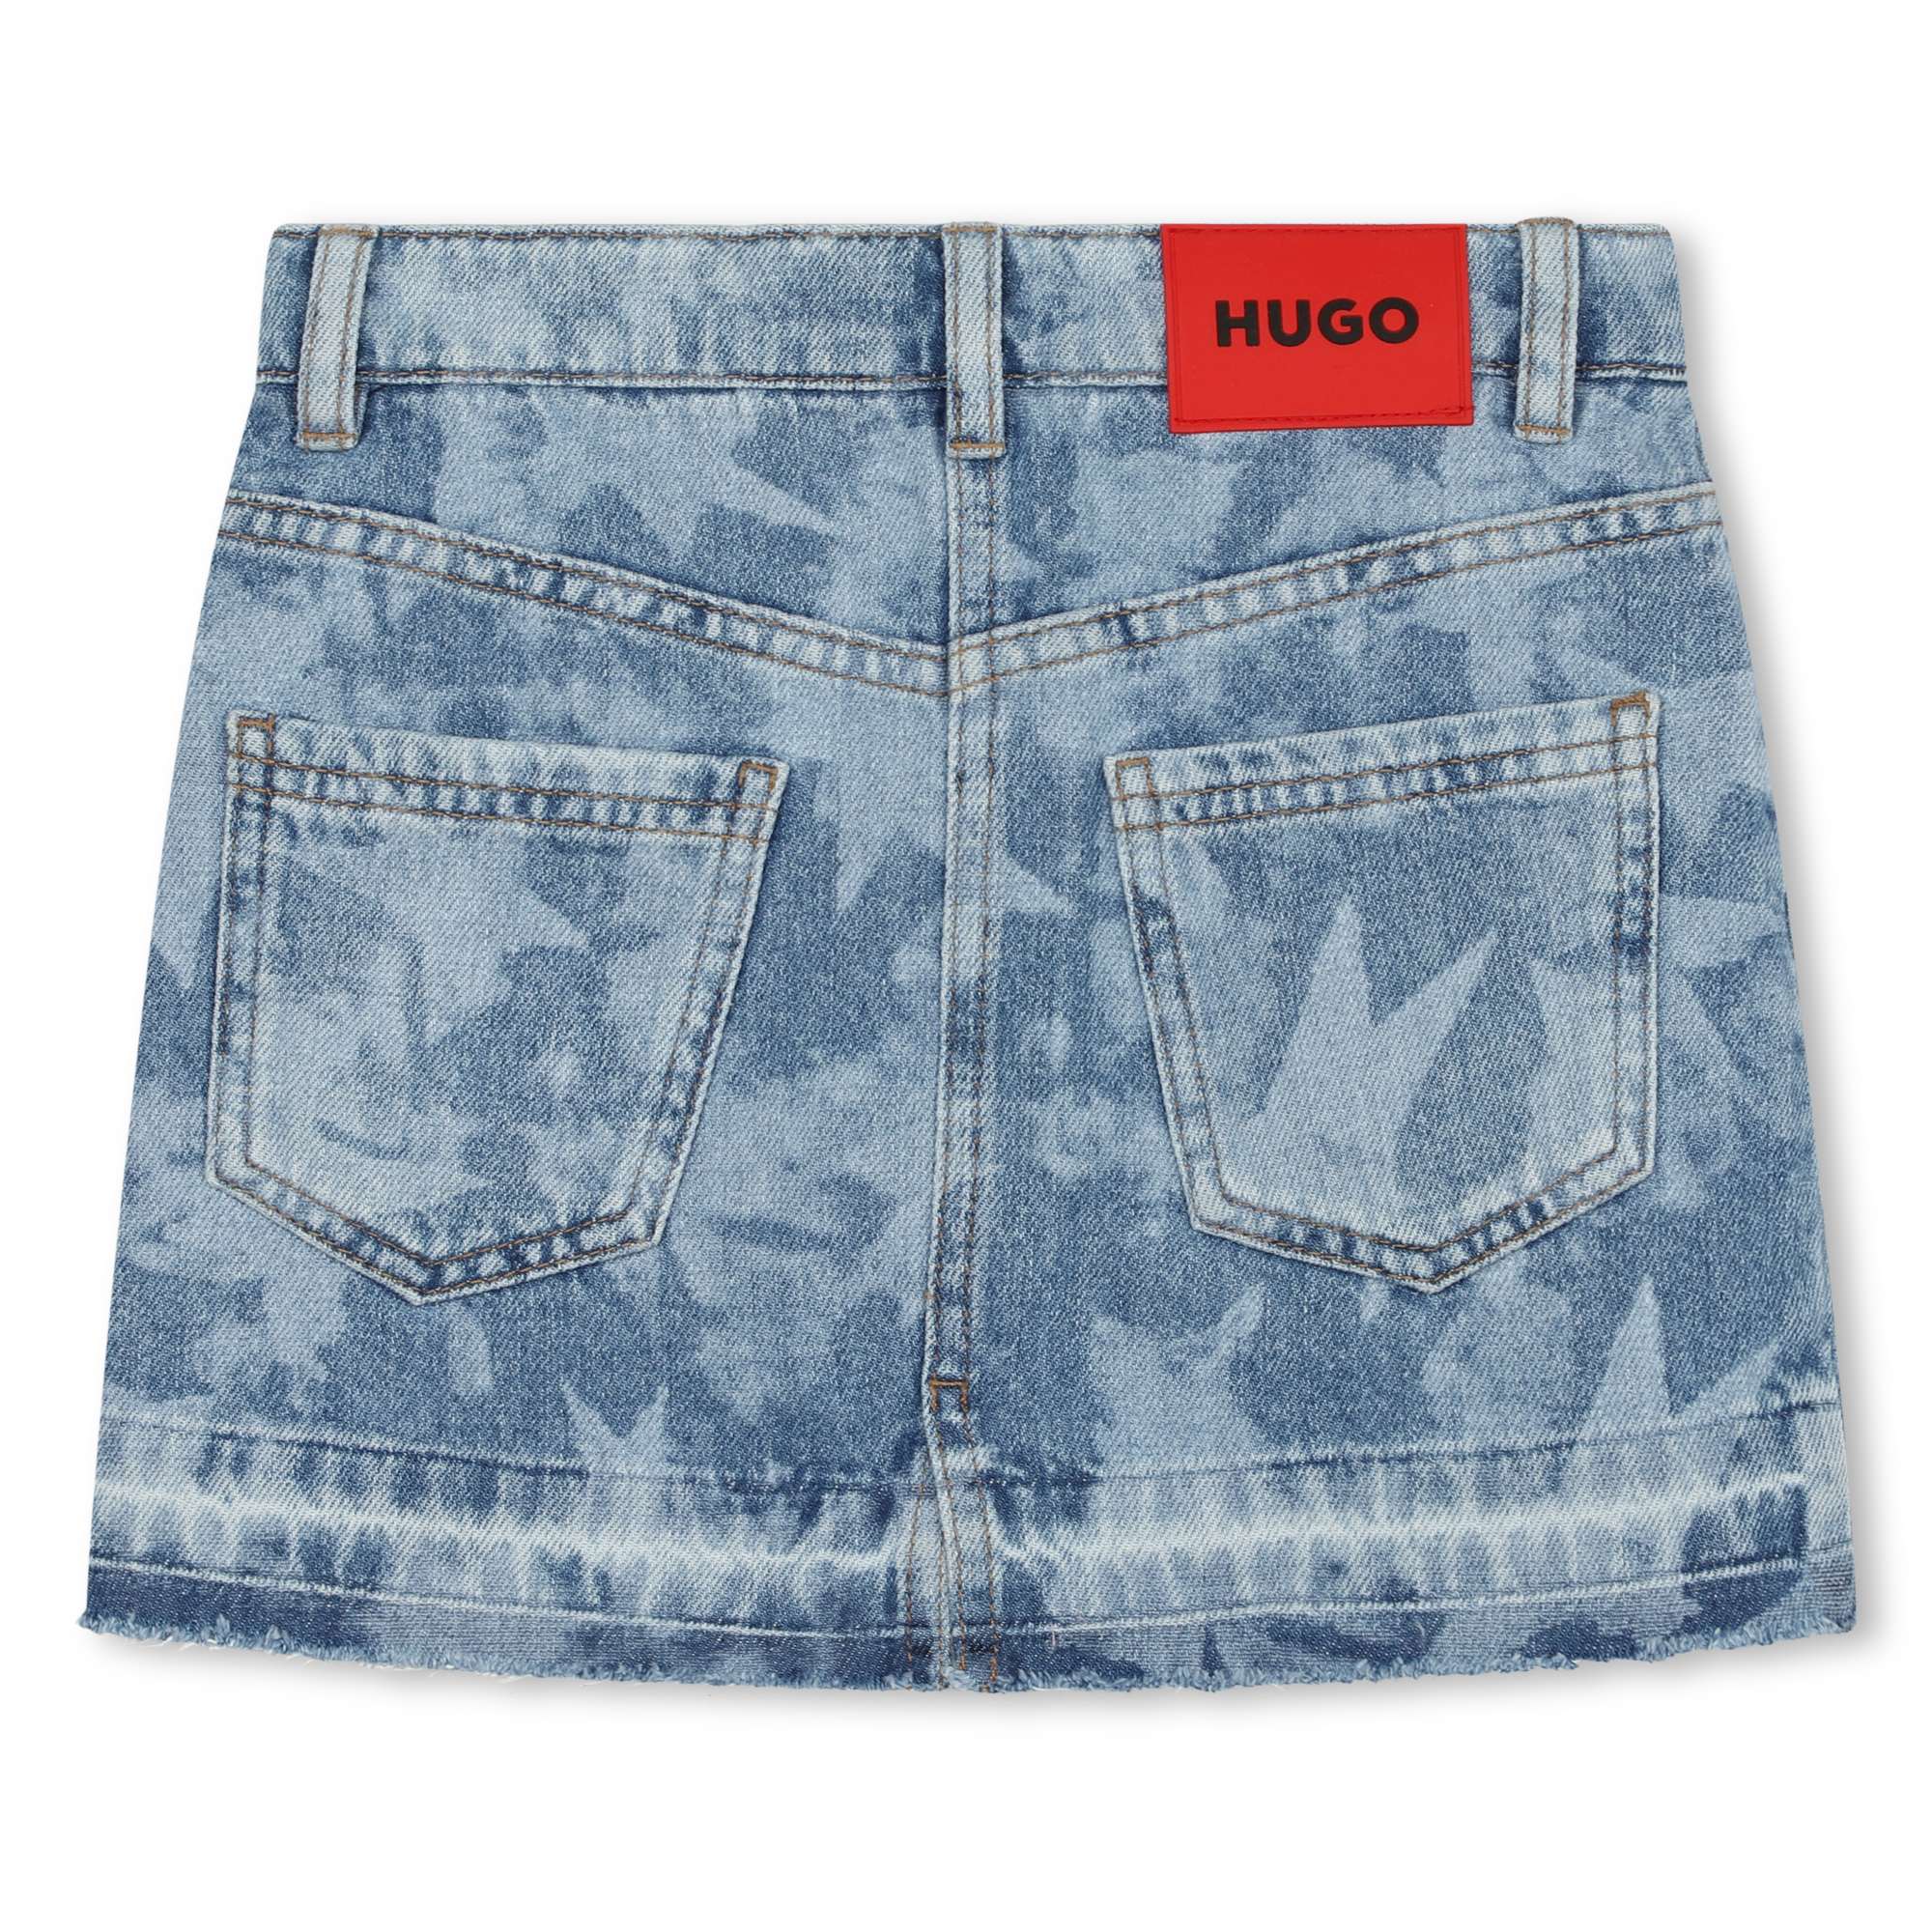 Printed denim skirt HUGO for GIRL